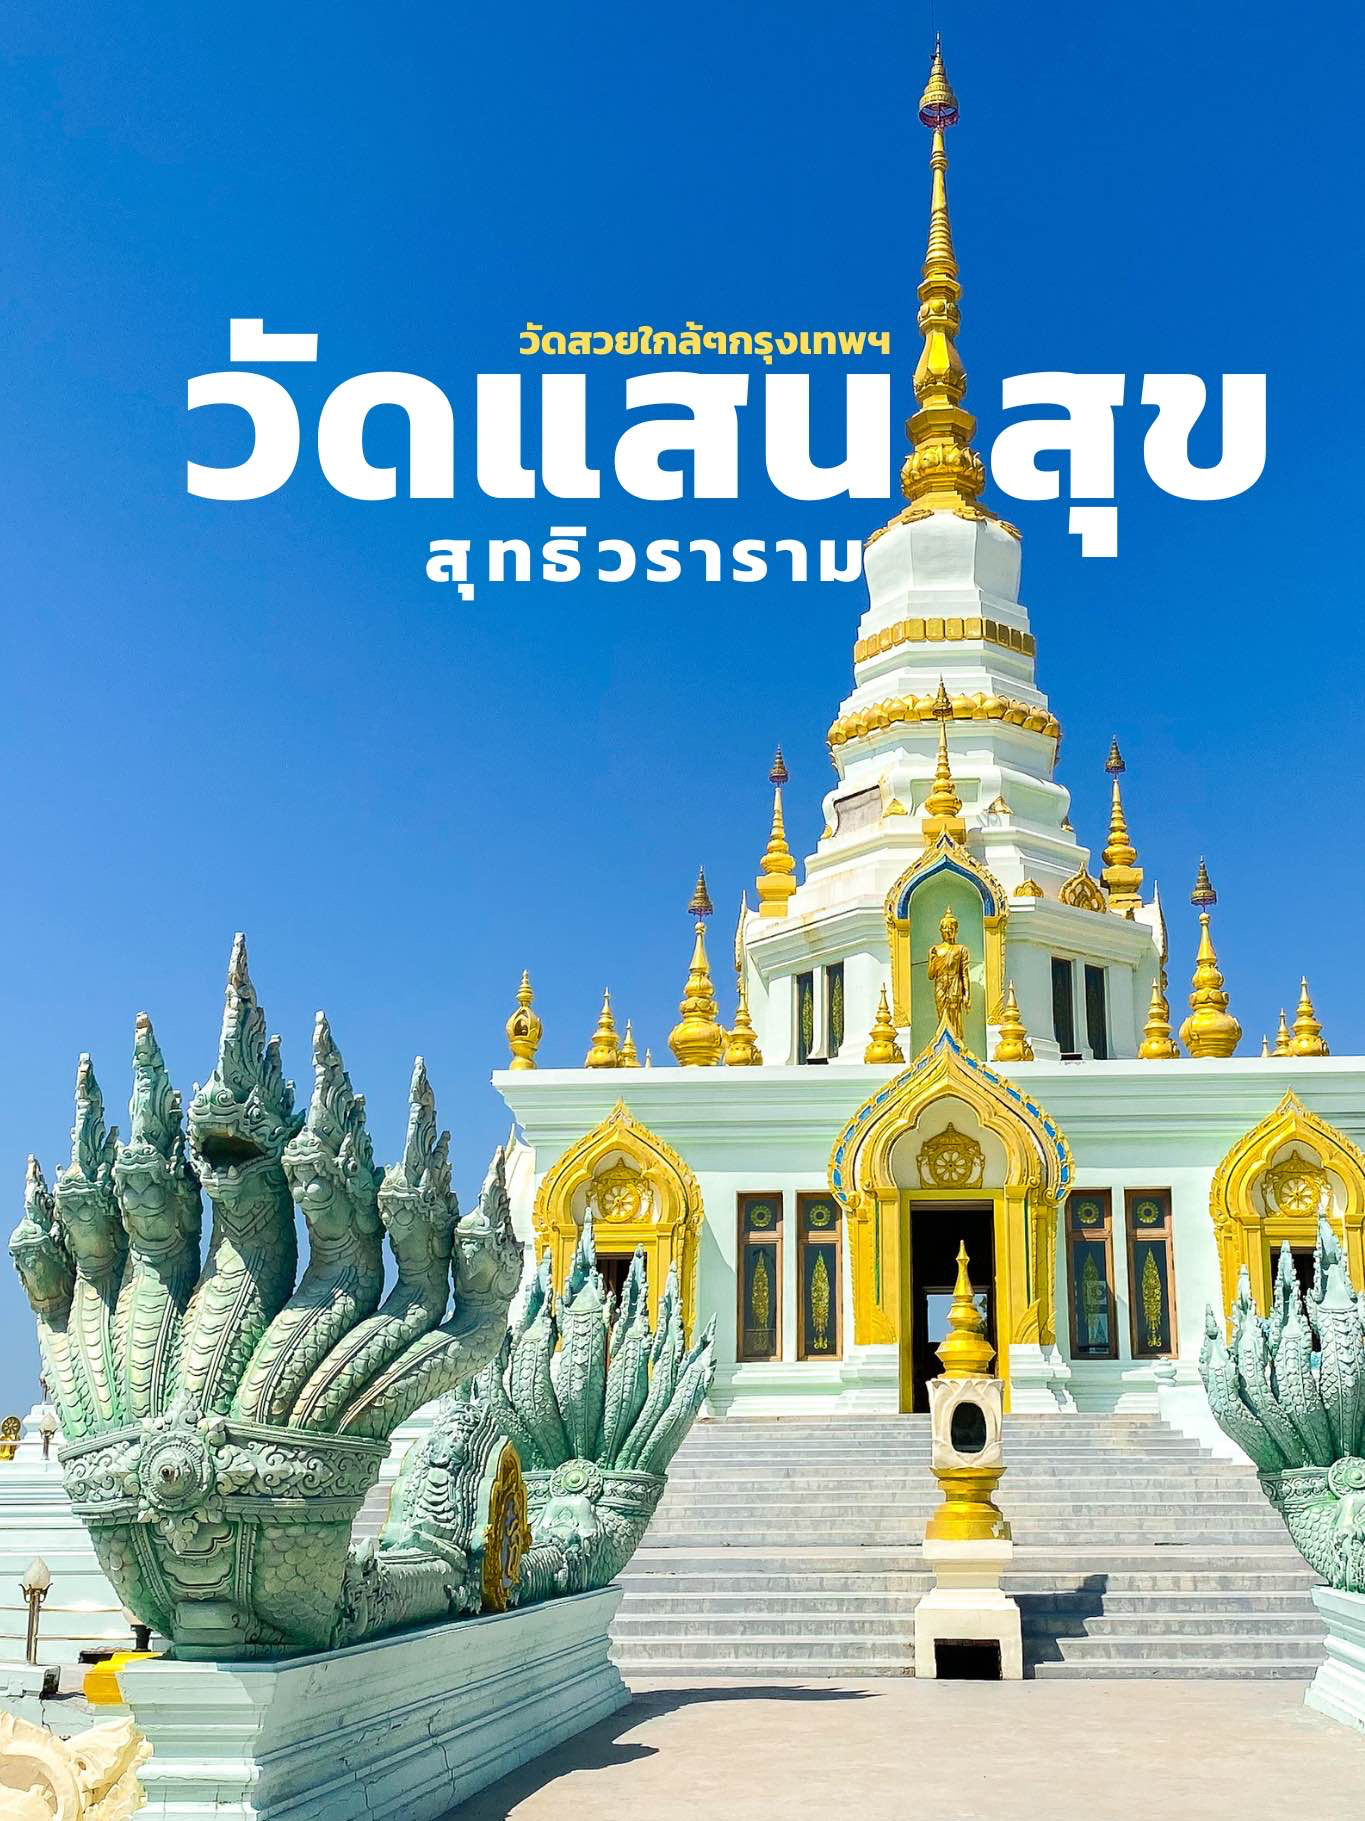 Phra Maha Chedi, Wat Saen Suk Suttwararam